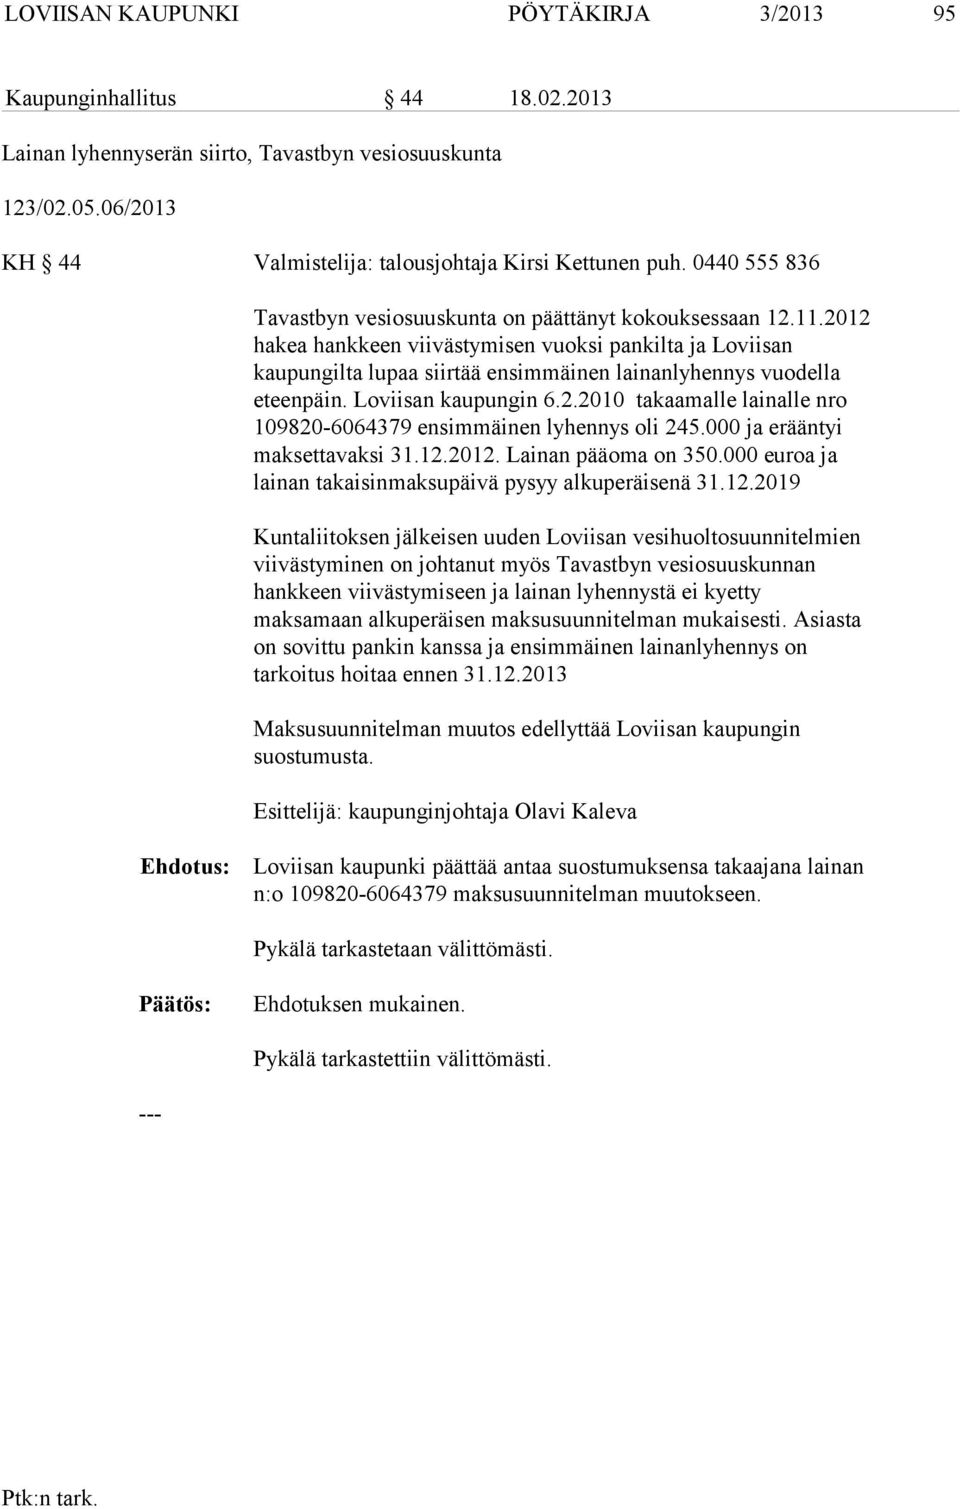 2012 hakea hankkeen viivästymisen vuoksi pankilta ja Loviisan kaupungilta lupaa siirtää ensimmäinen lainanlyhennys vuodella eteenpäin. Loviisan kaupungin 6.2.2010 takaamalle lainalle nro 109820-6064379 ensimmäinen lyhennys oli 245.